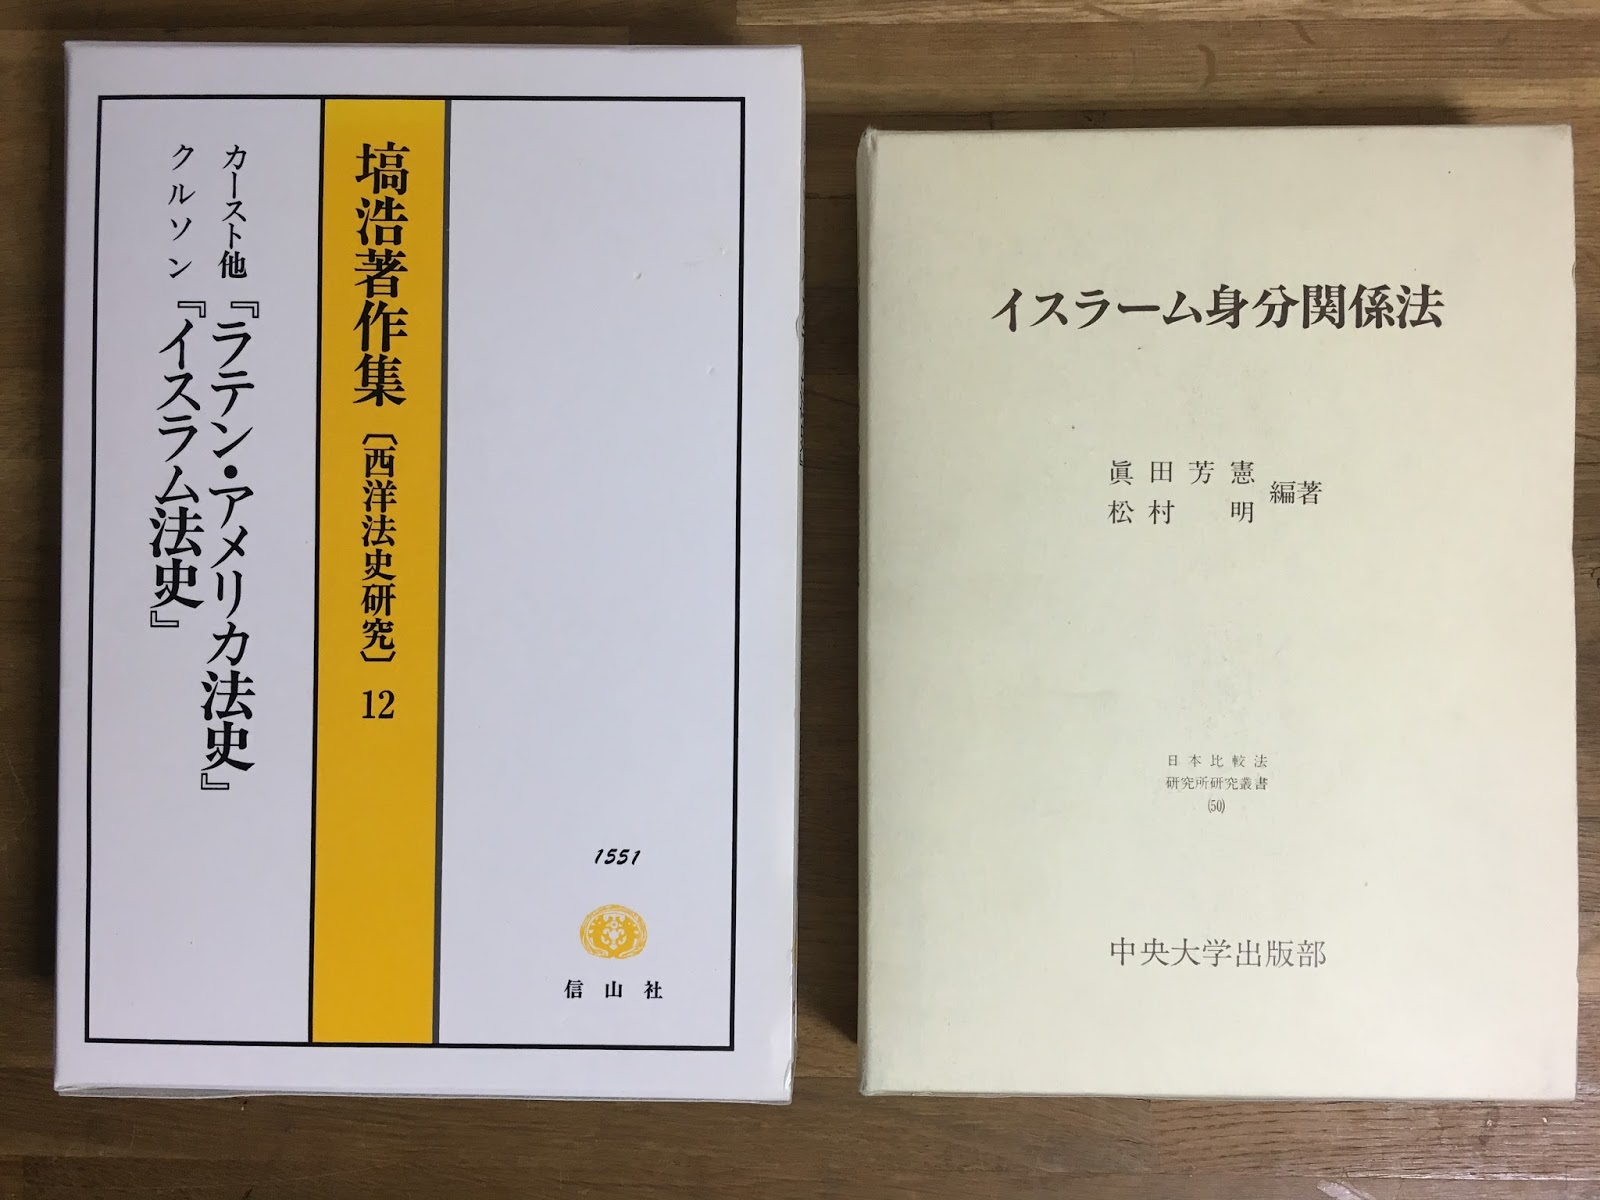 mikazuki books online 三日月書店: 4月 2016